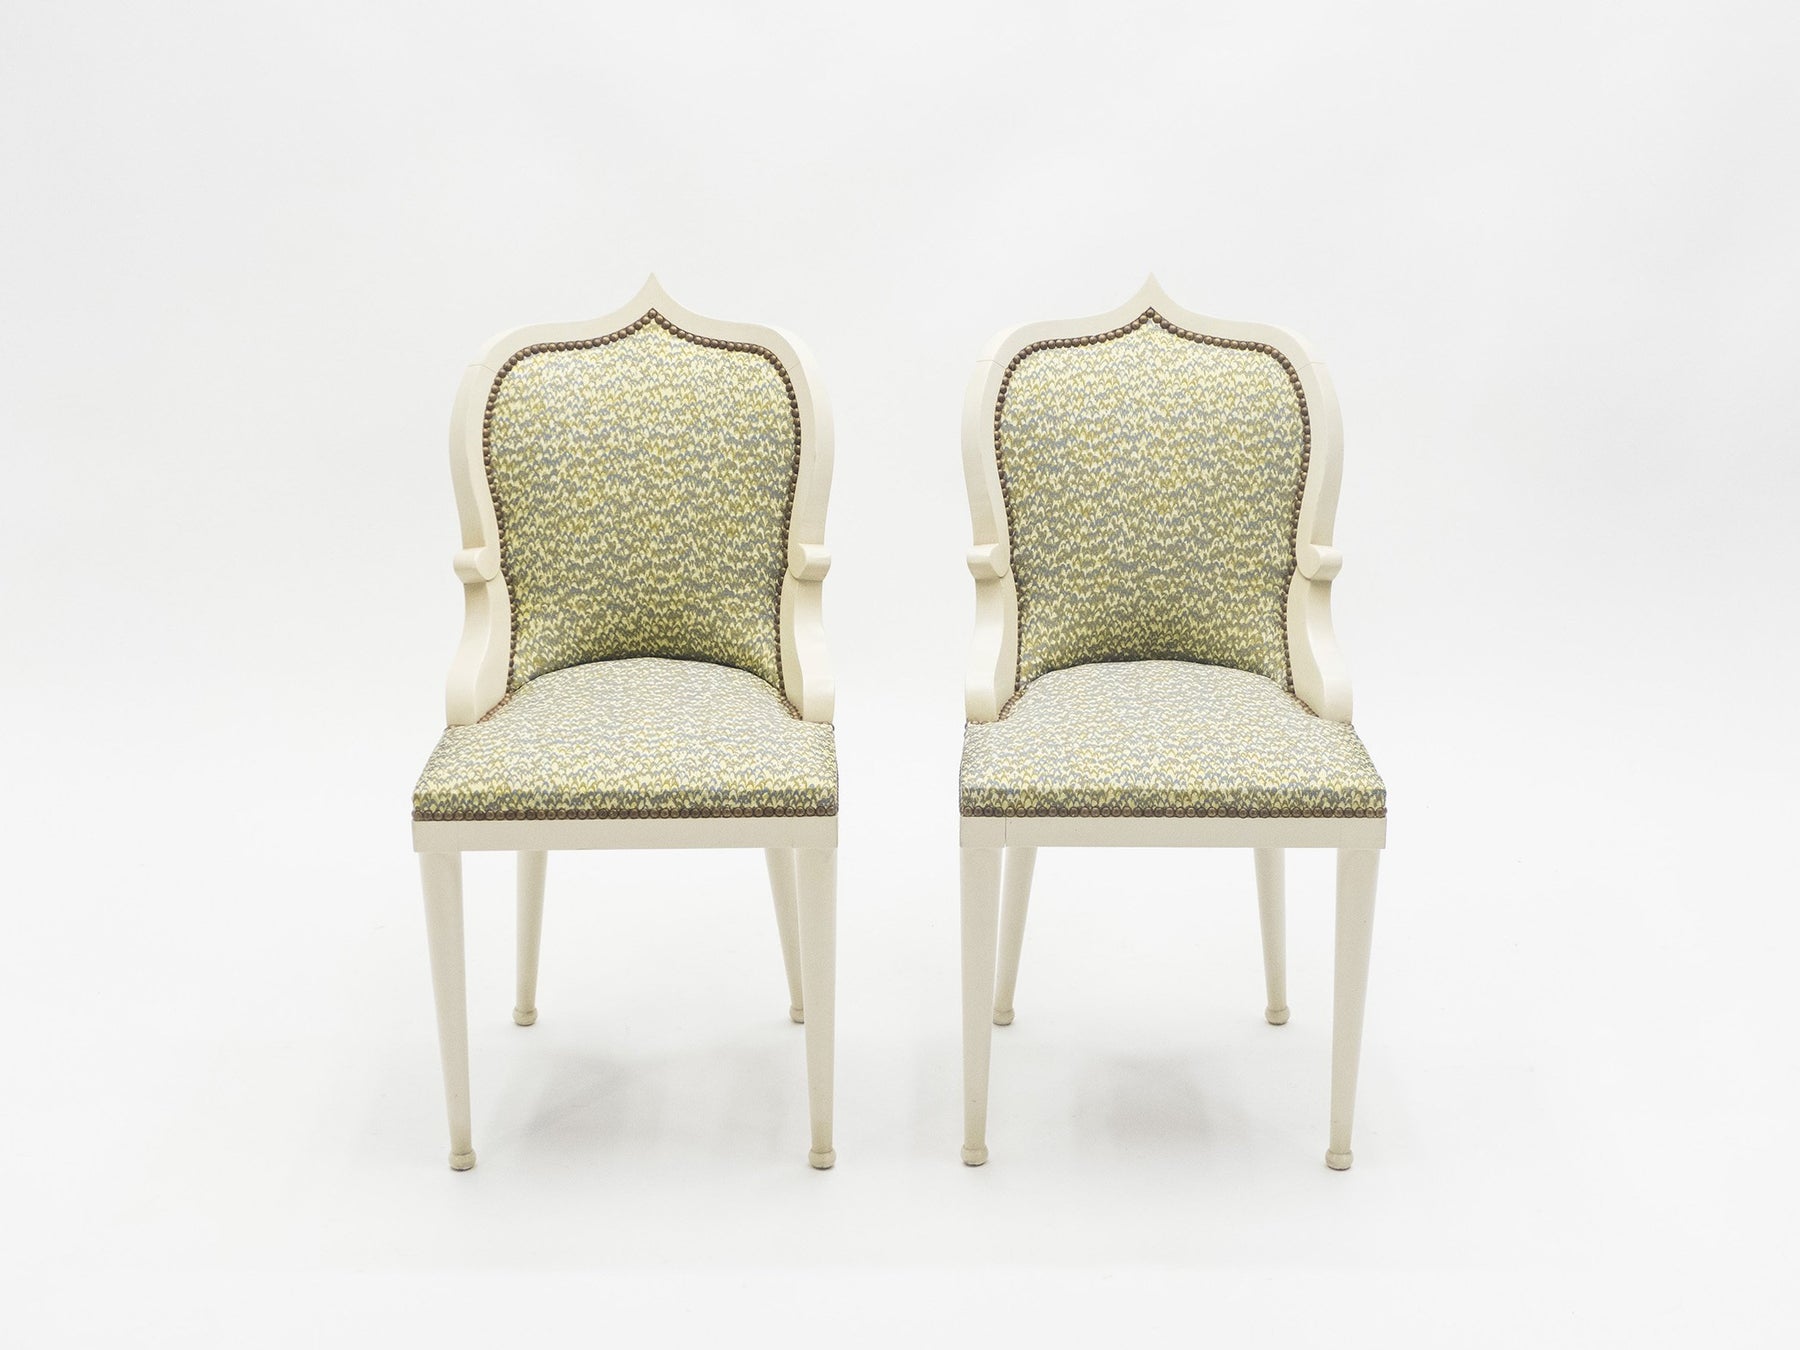 Très rare ensemble de 4 chaises par Garouste & Bonetti modèle ‘Palace’ de 1980